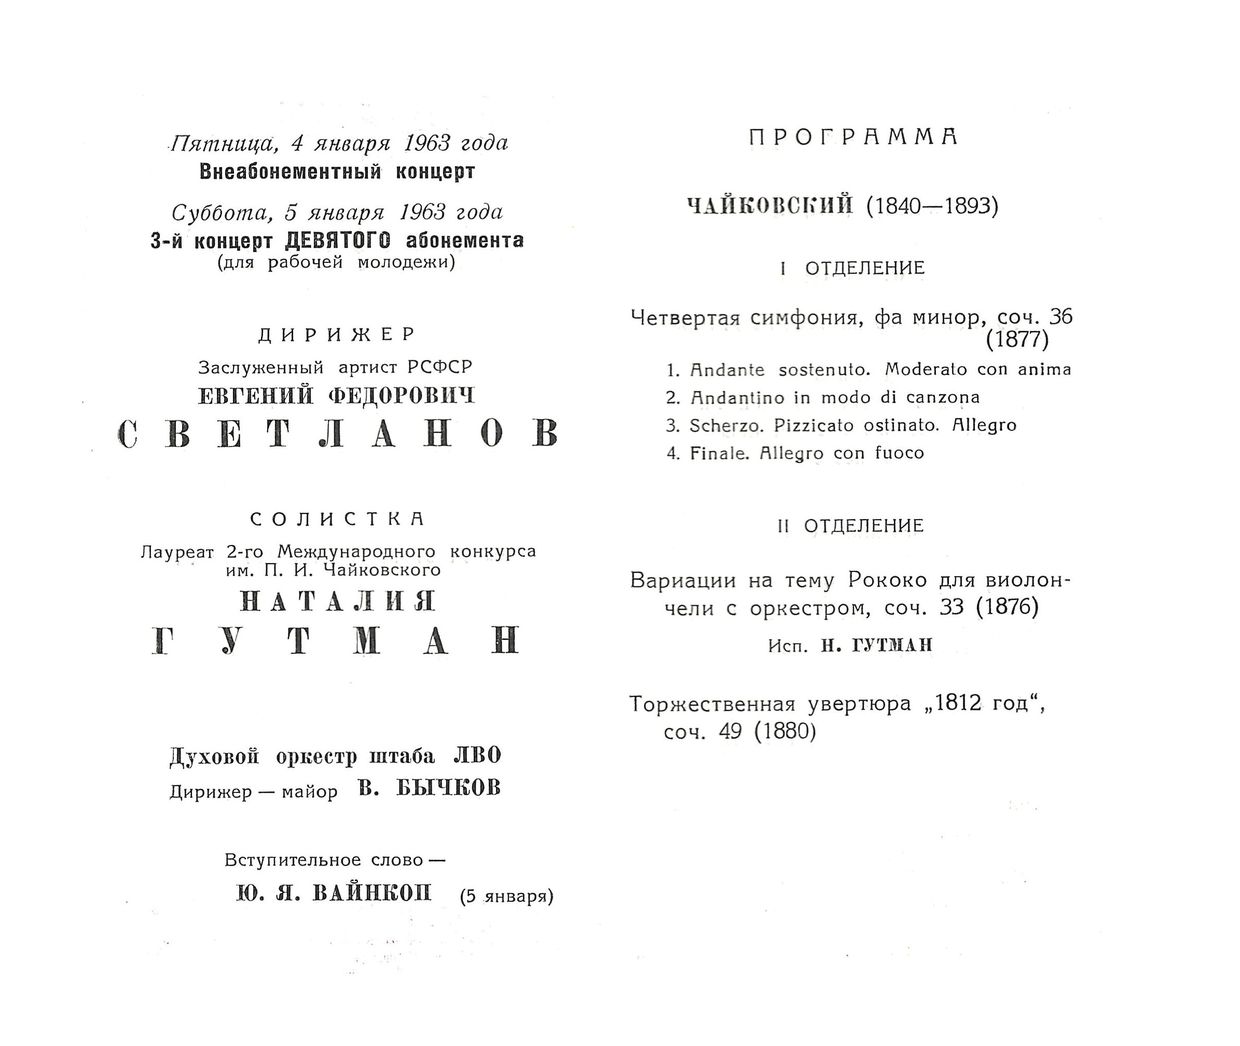 Симфонический концерт
Дирижер – Евгений Светланов
